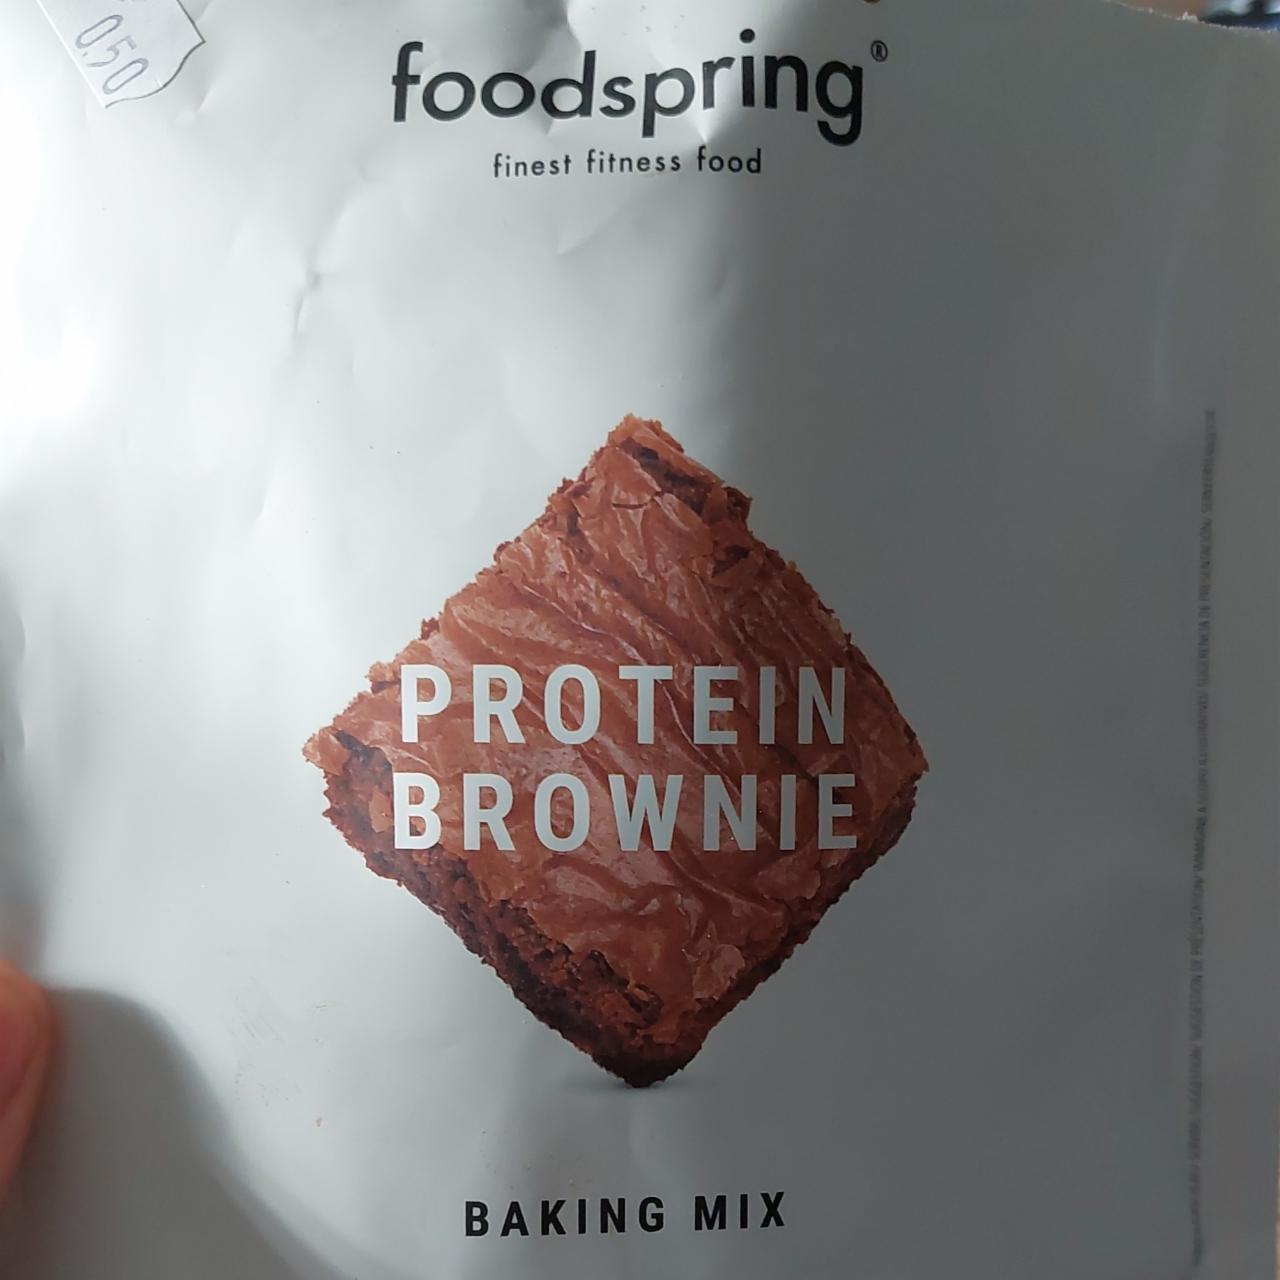 Képek - Protein brownie baking mix Foodspring